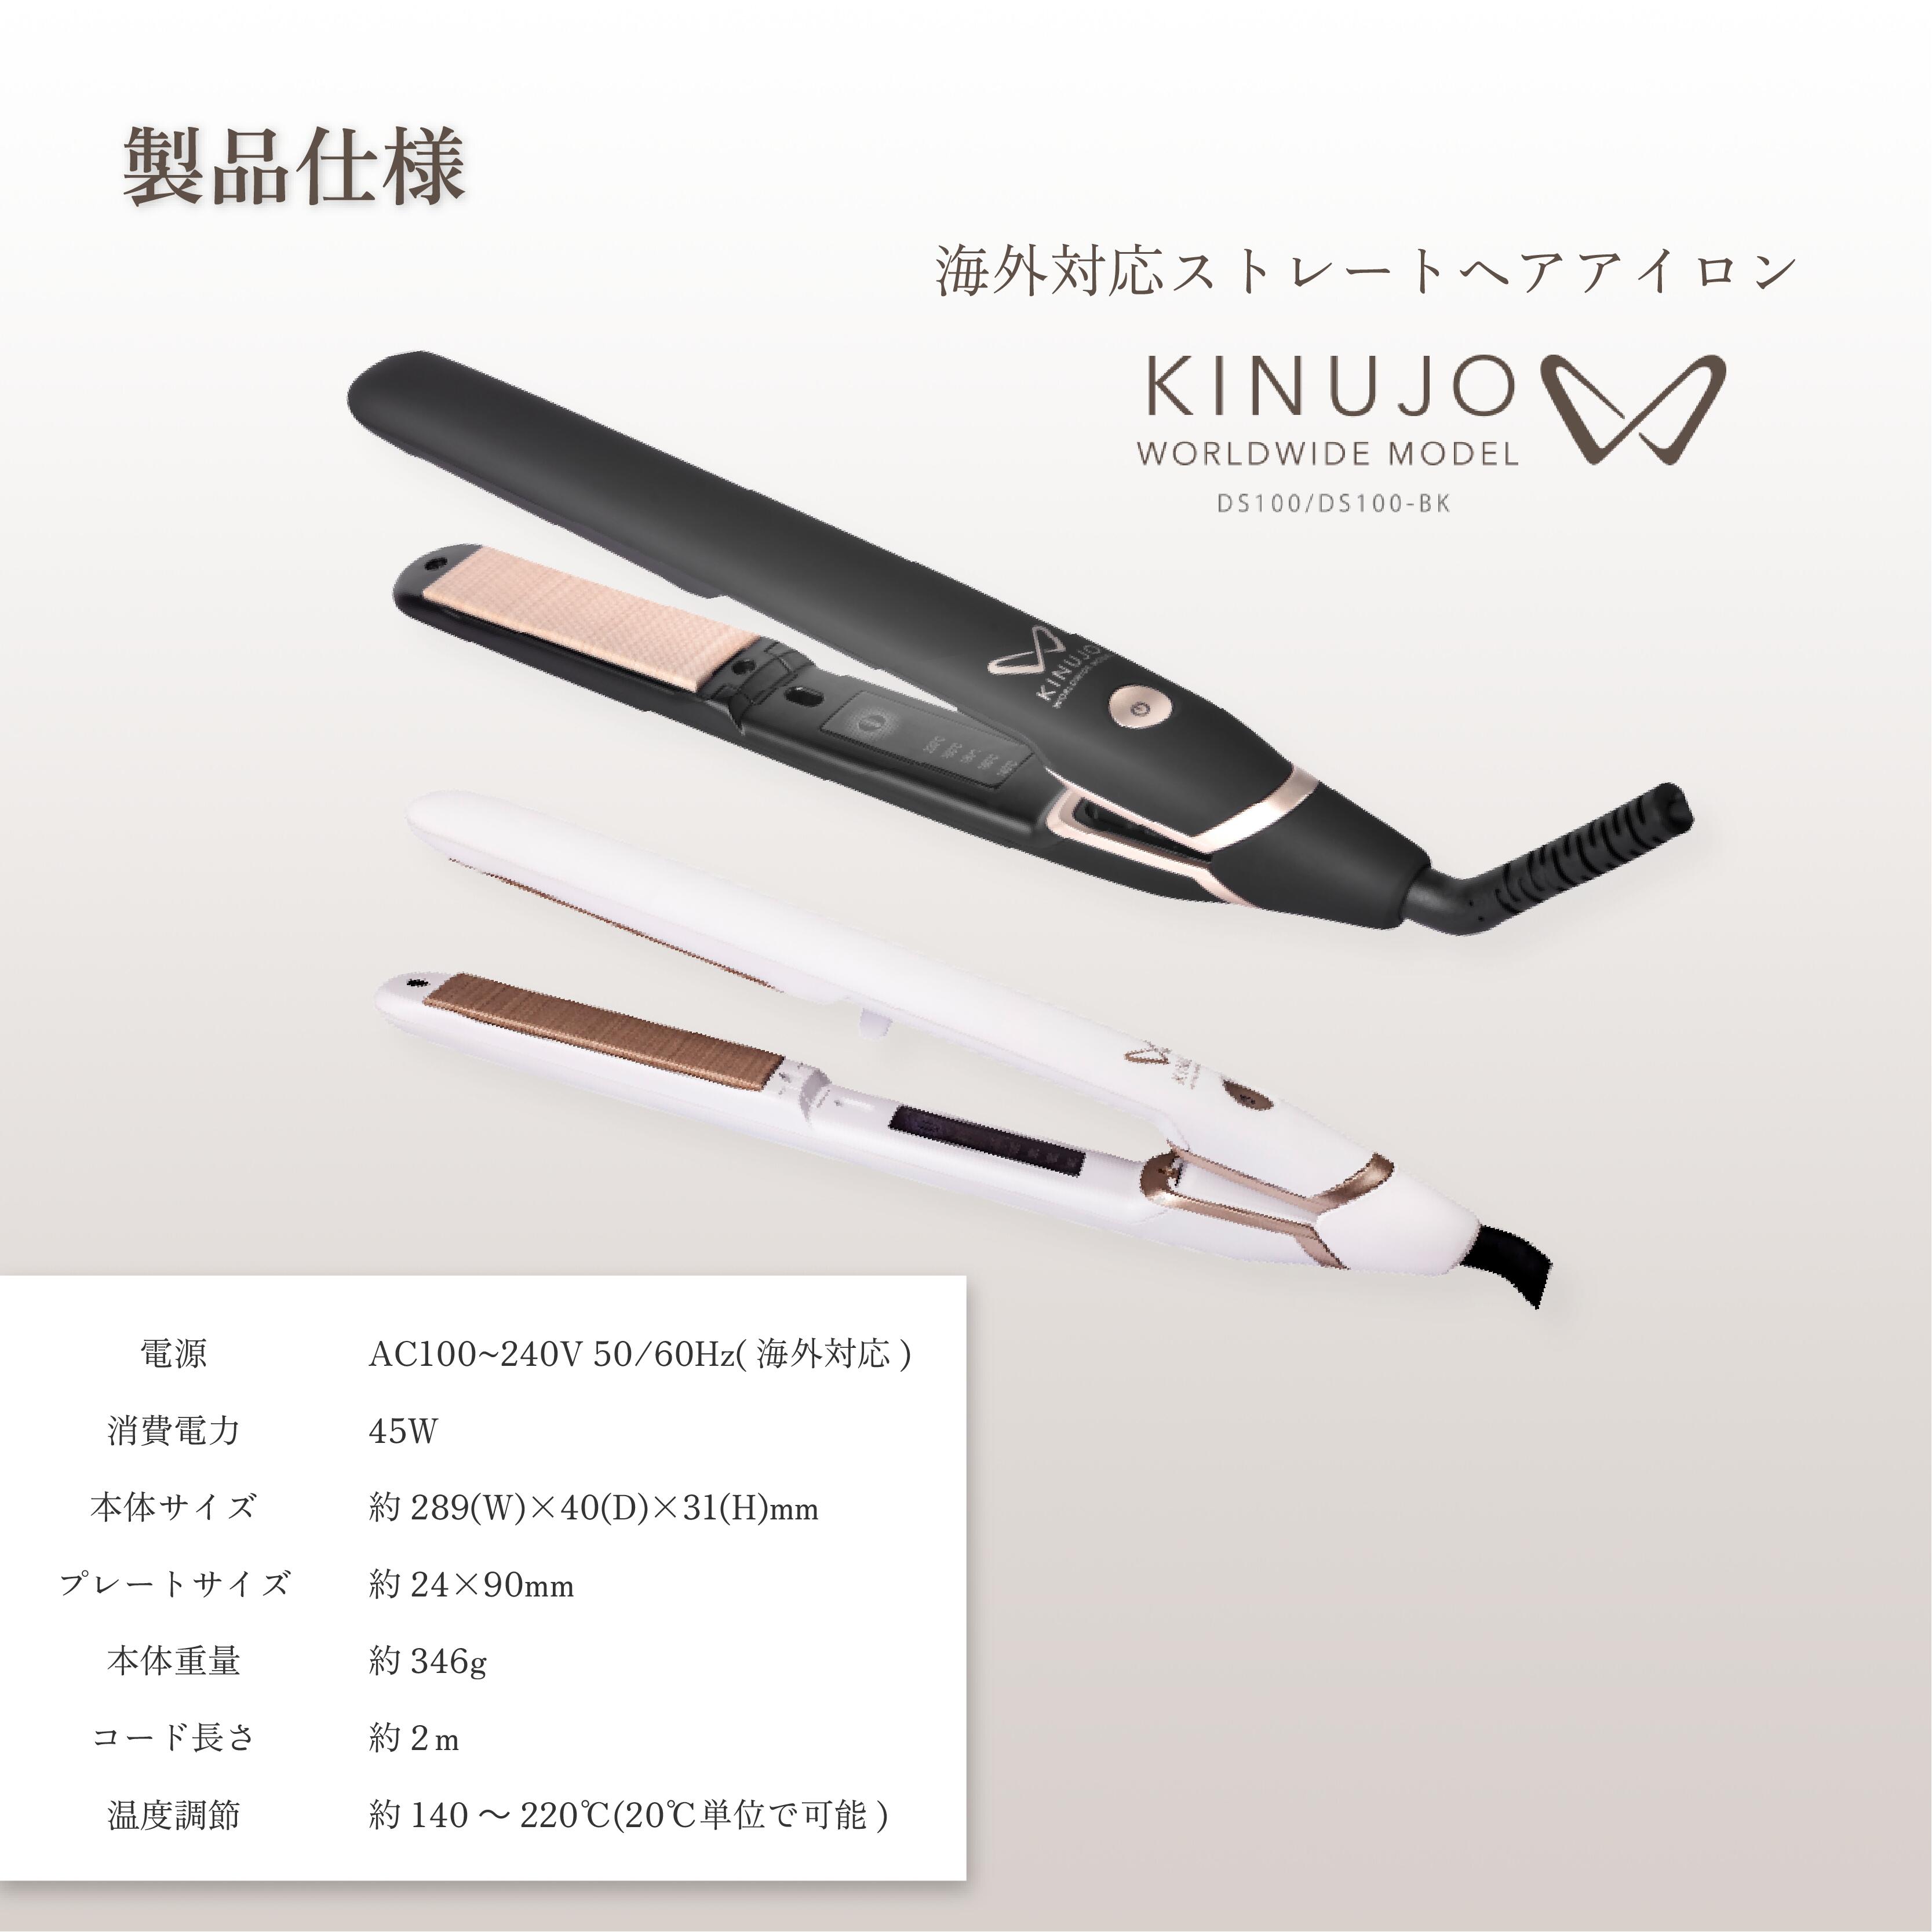 公式限定ガイドブック付き】 KINUJO W-worldwide model- キヌージョ 